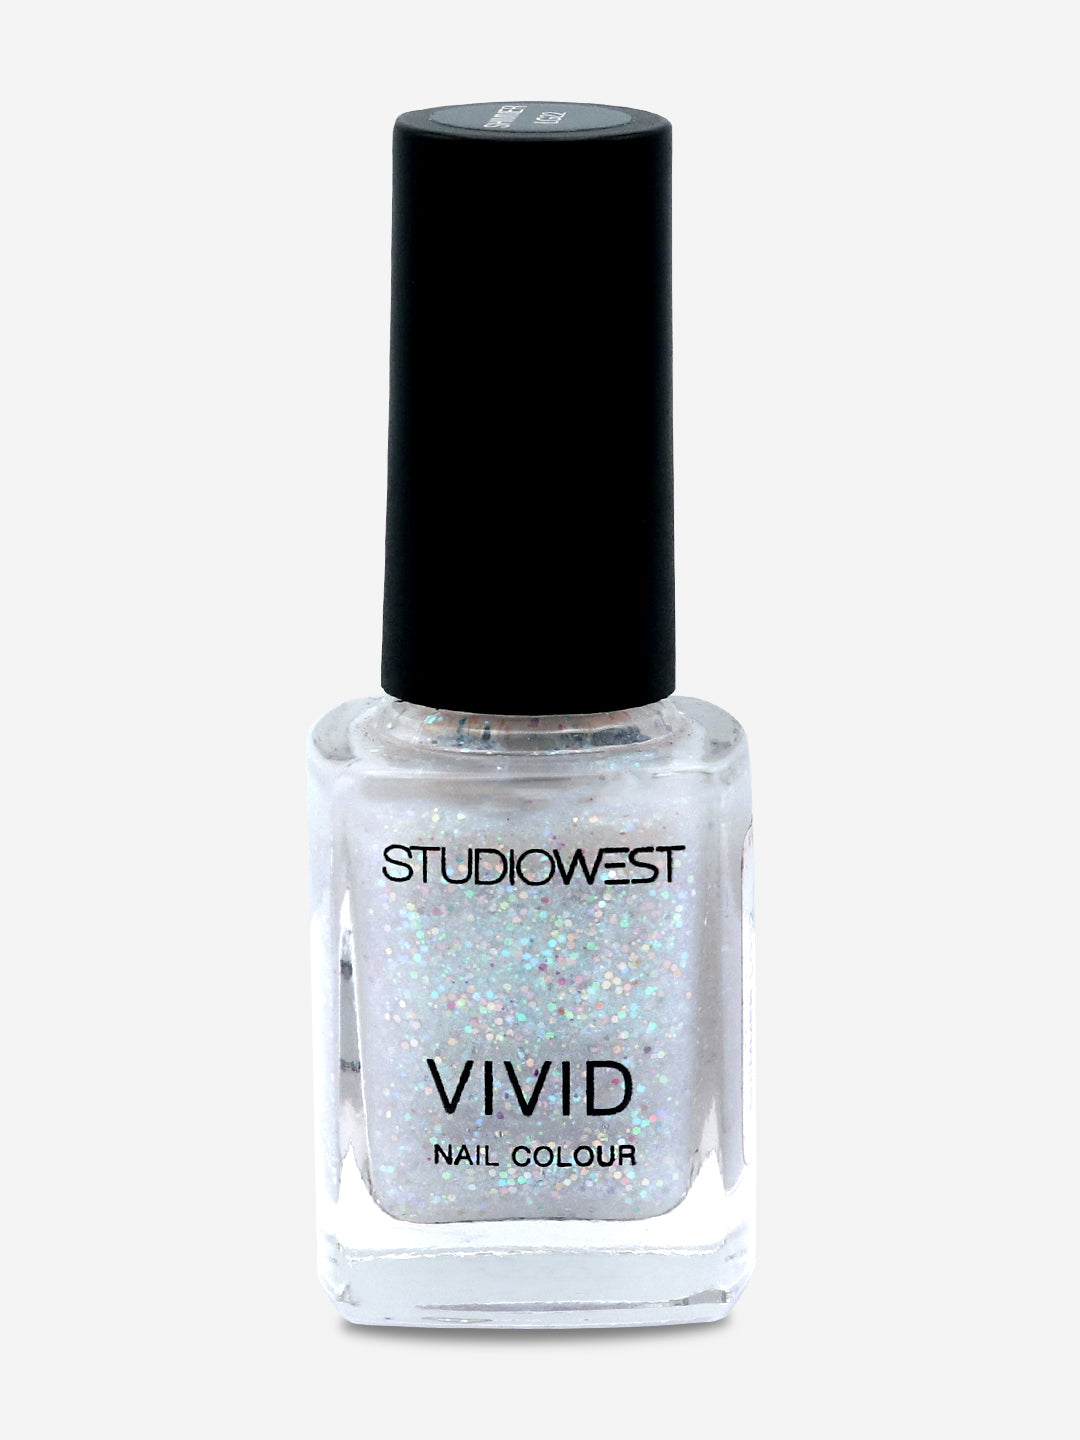 Studiowest Vivid Nail Colour 22-LG - 9 ml